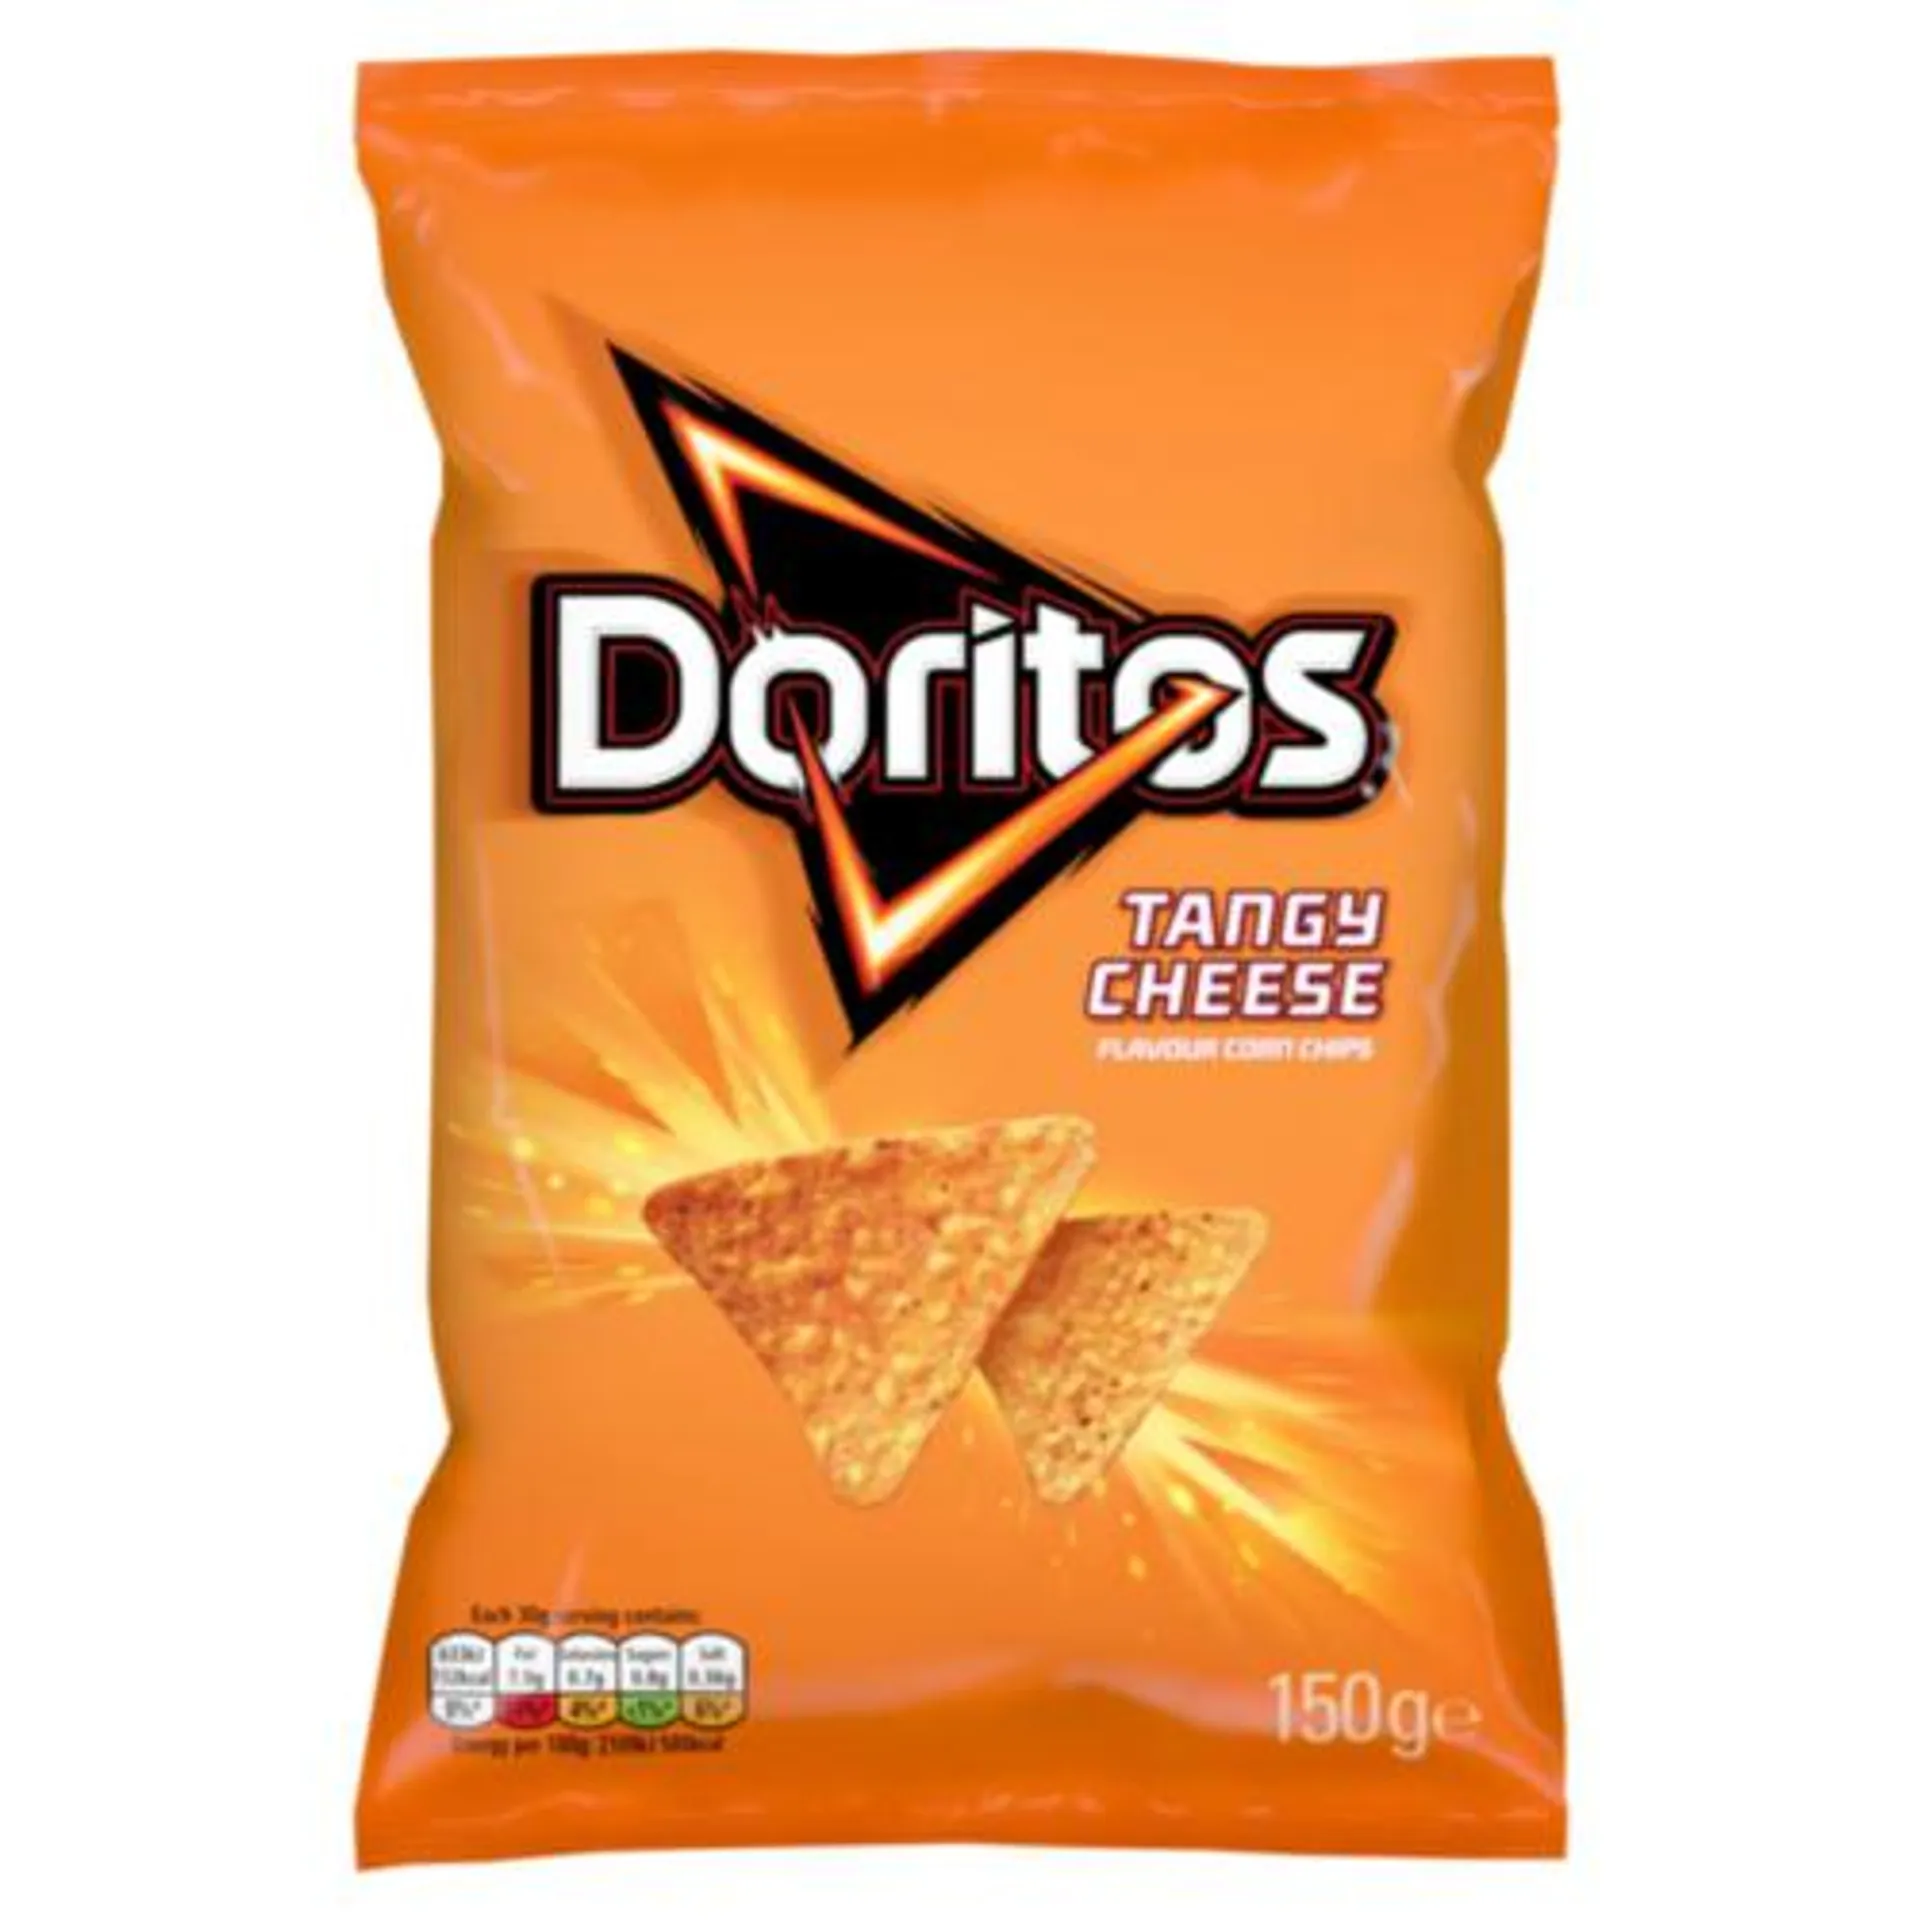 Doritos Tangy Cheese Crisps Bag